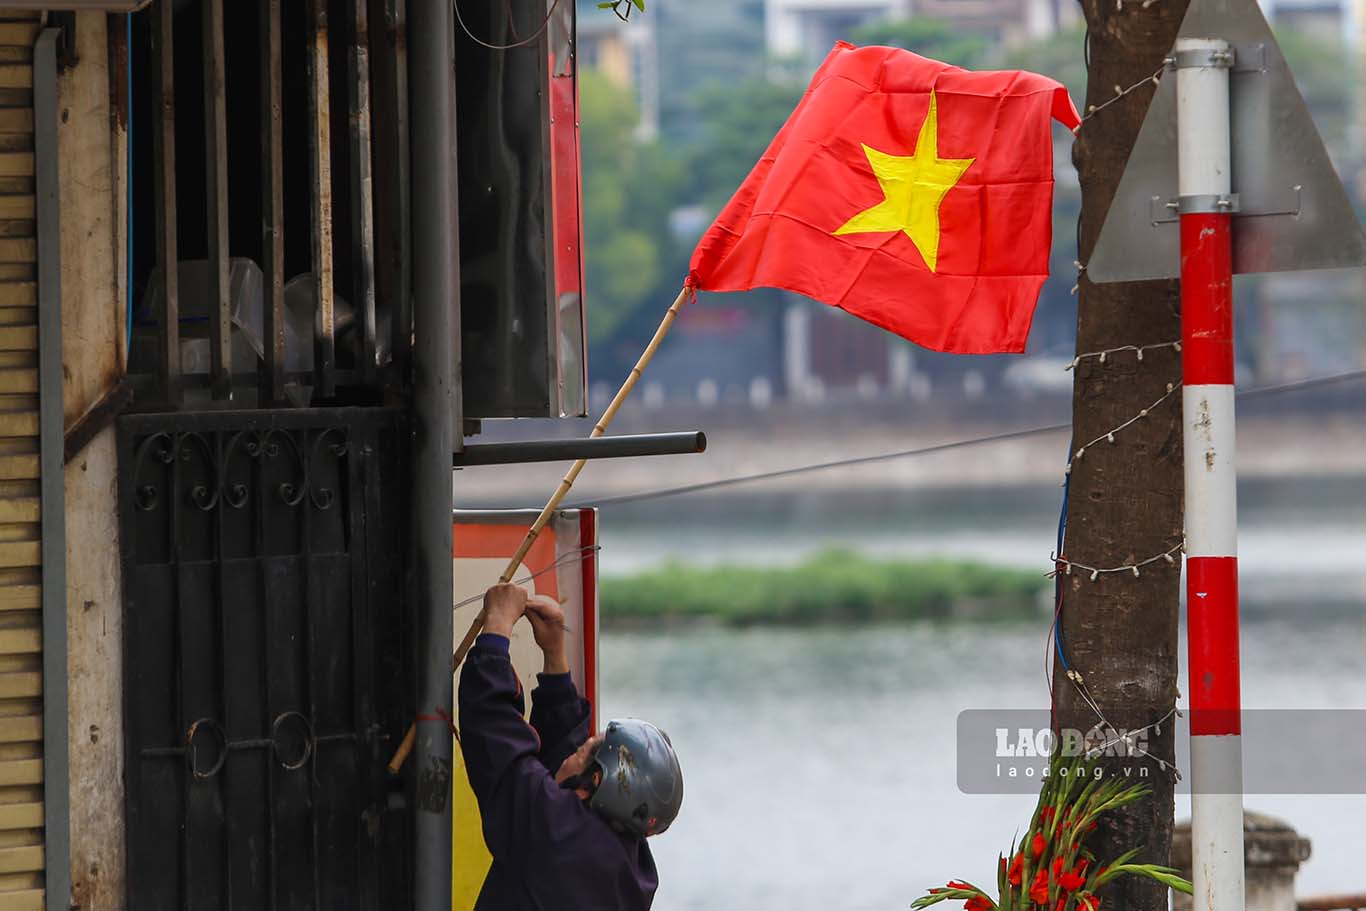 Treo cờ Tổ quốc trở thành một nét đẹp của người dân Việt Nam. Nhìn cờ Tổ quốc xuất hiện khắp nơi càng khiến không khí Tết trở nên vui tươi, phấn khởi hơn.